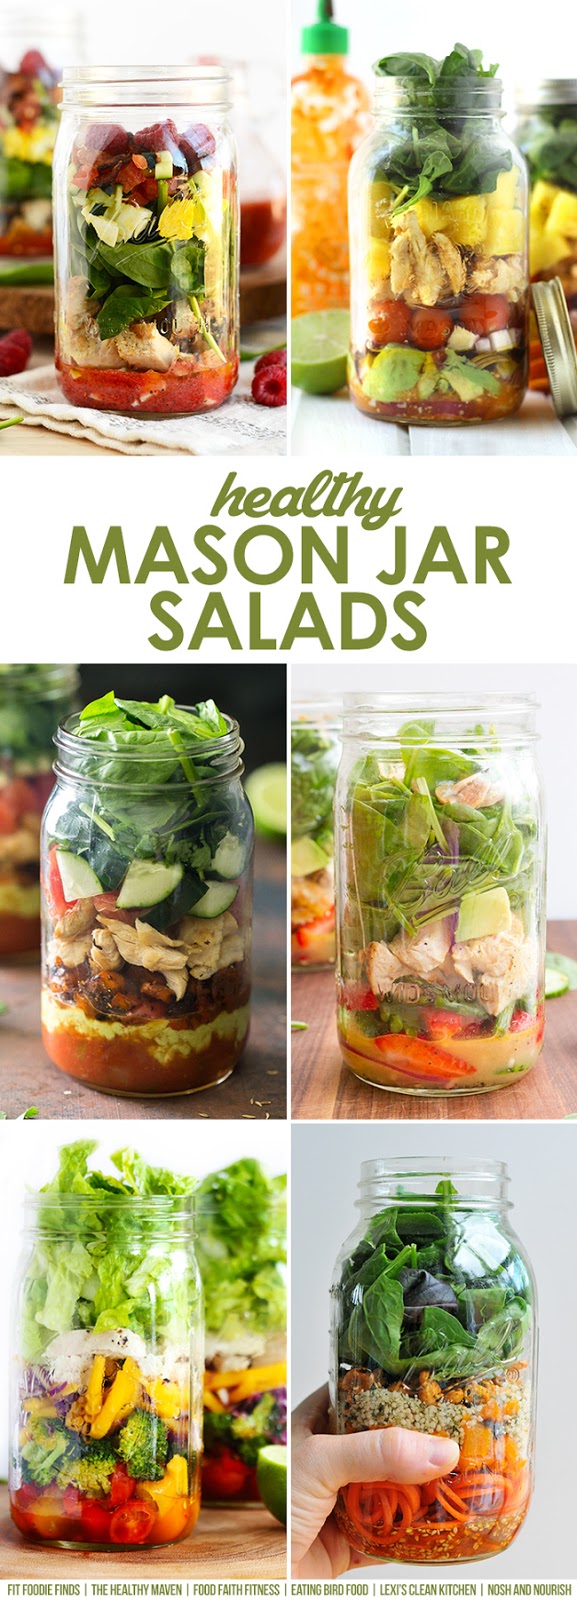 https://3.bp.blogspot.com/-B8pijIJsj9U/VT76LgJ63kI/AAAAAAAApfU/nTTUMA4_yBg/s1600/mason-jar-salads.jpg